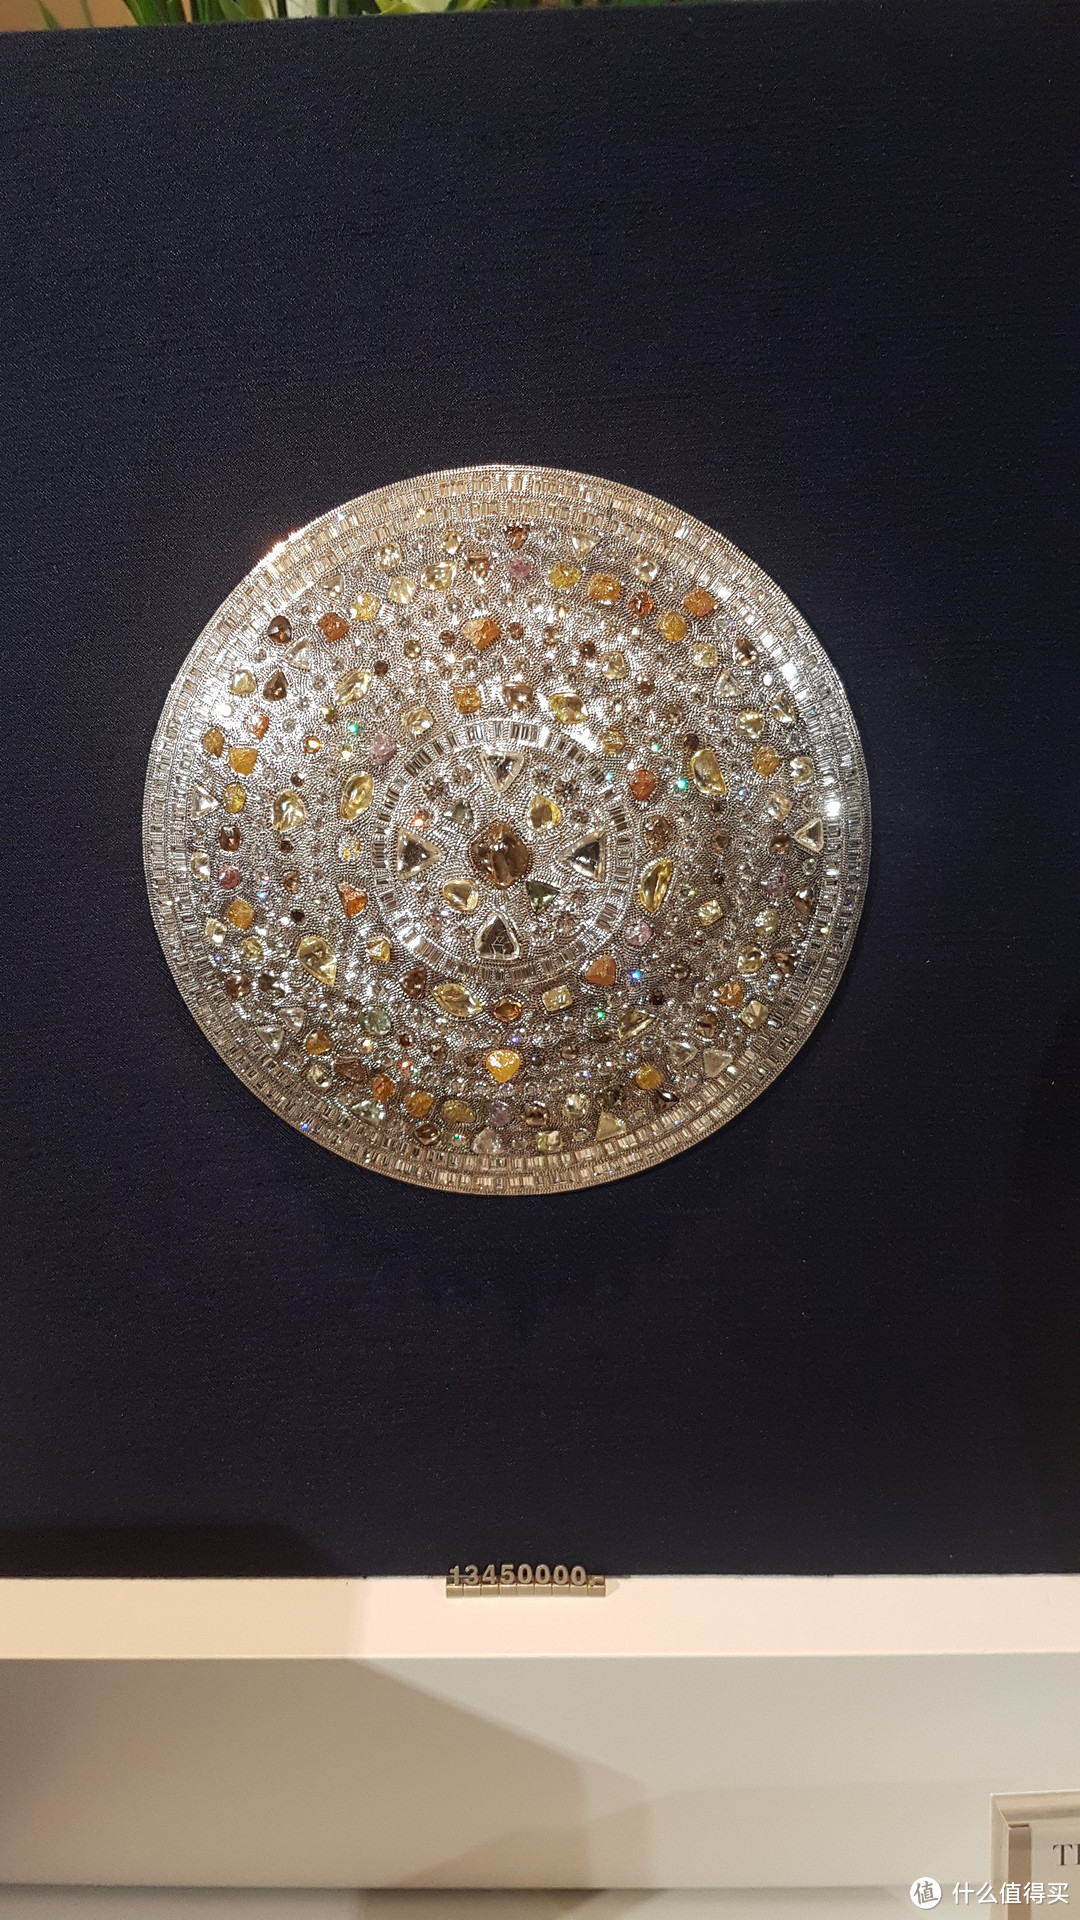 #原创新人#DE BEERS戴比尔斯钻石珠宝展，分享100多克拉大钻石美图